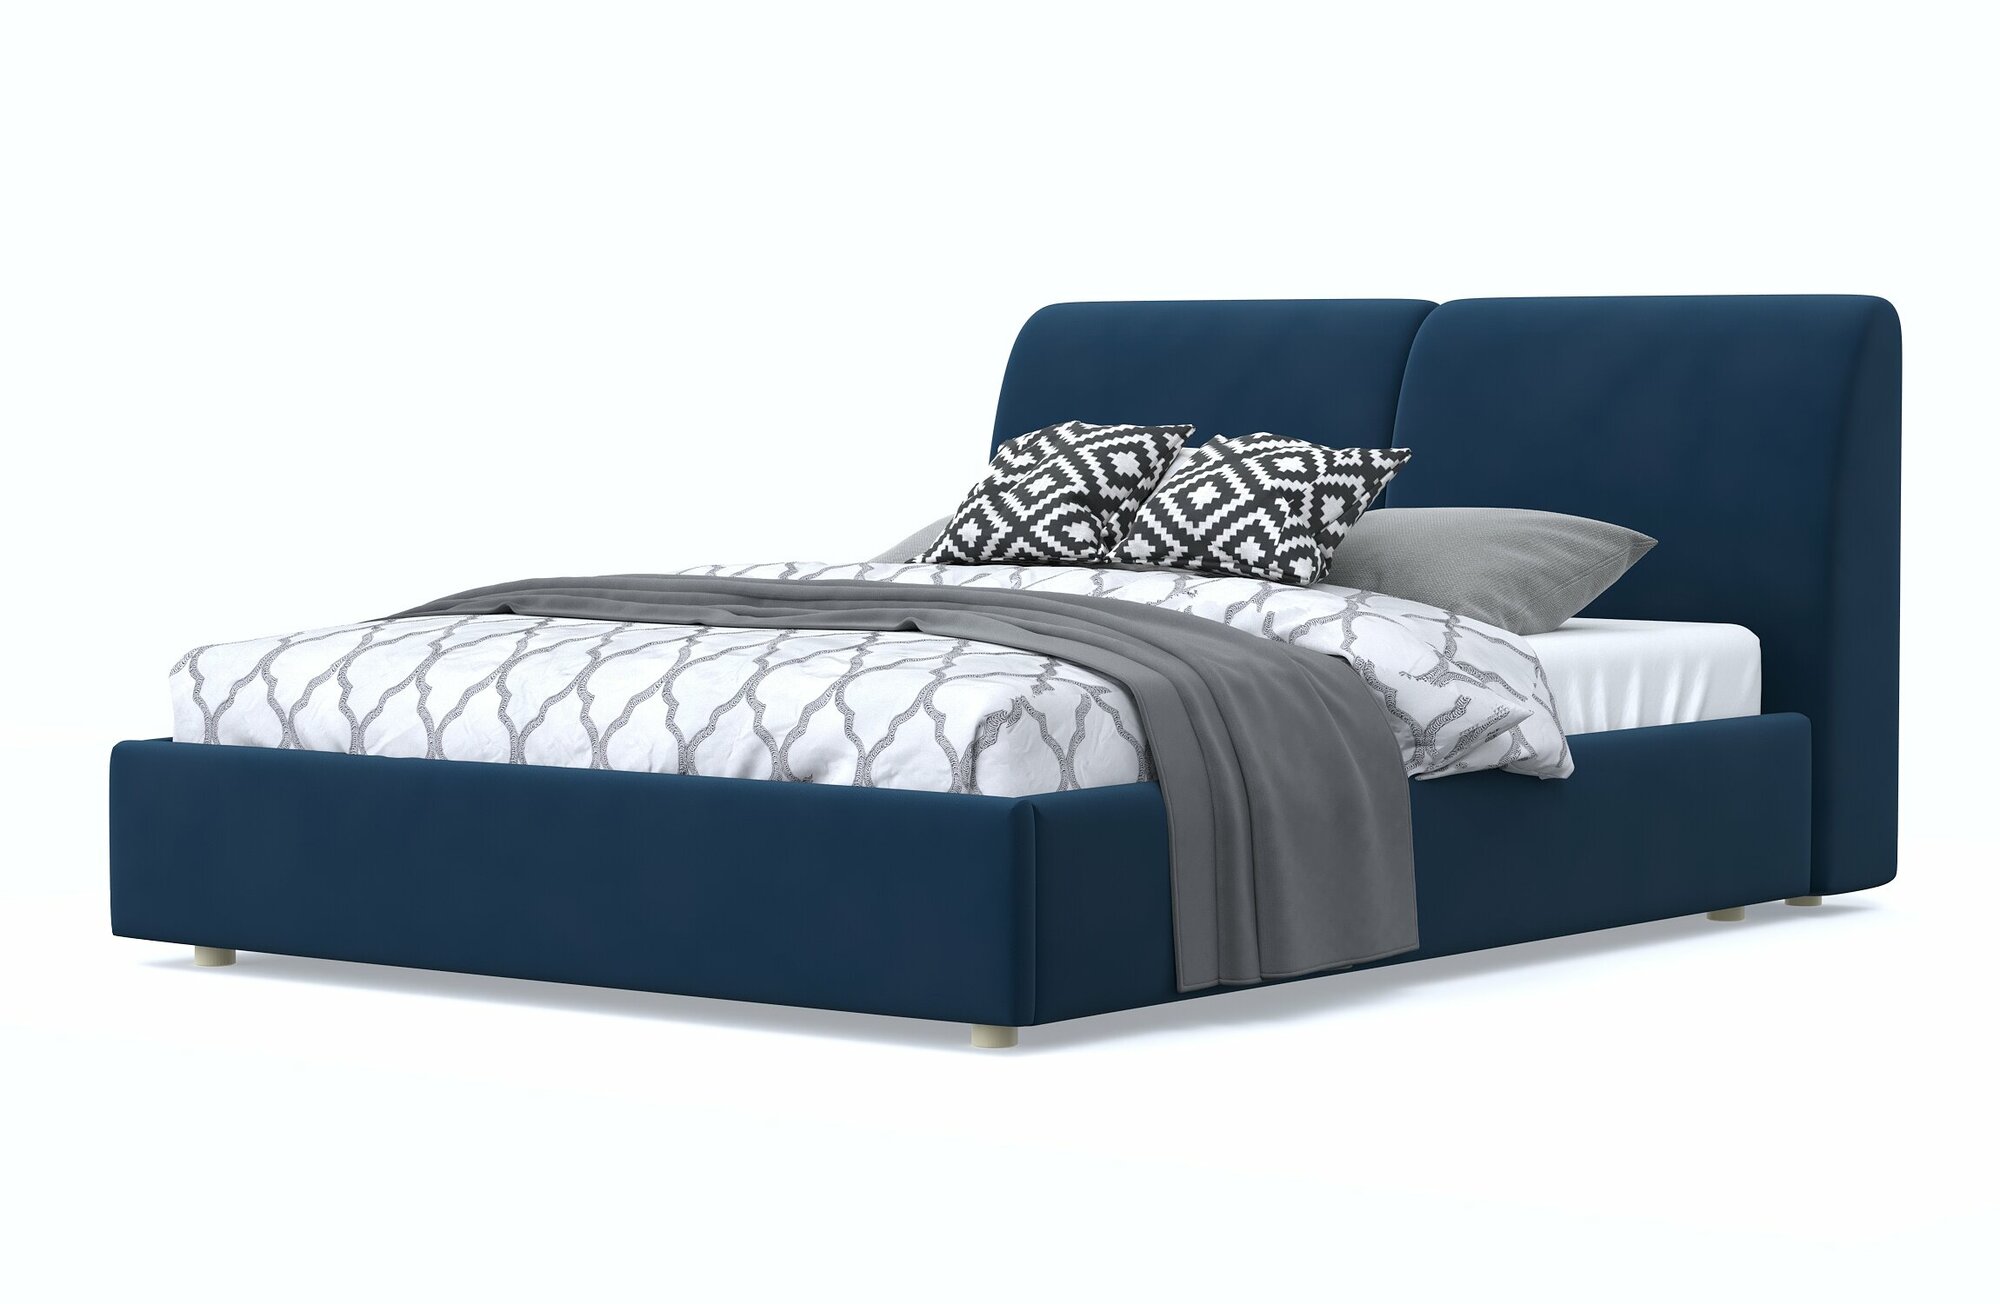 Двуспальная кровать бекка 160х200, с мягким изголовьем, синий, велюр, массив дерева, на ножках